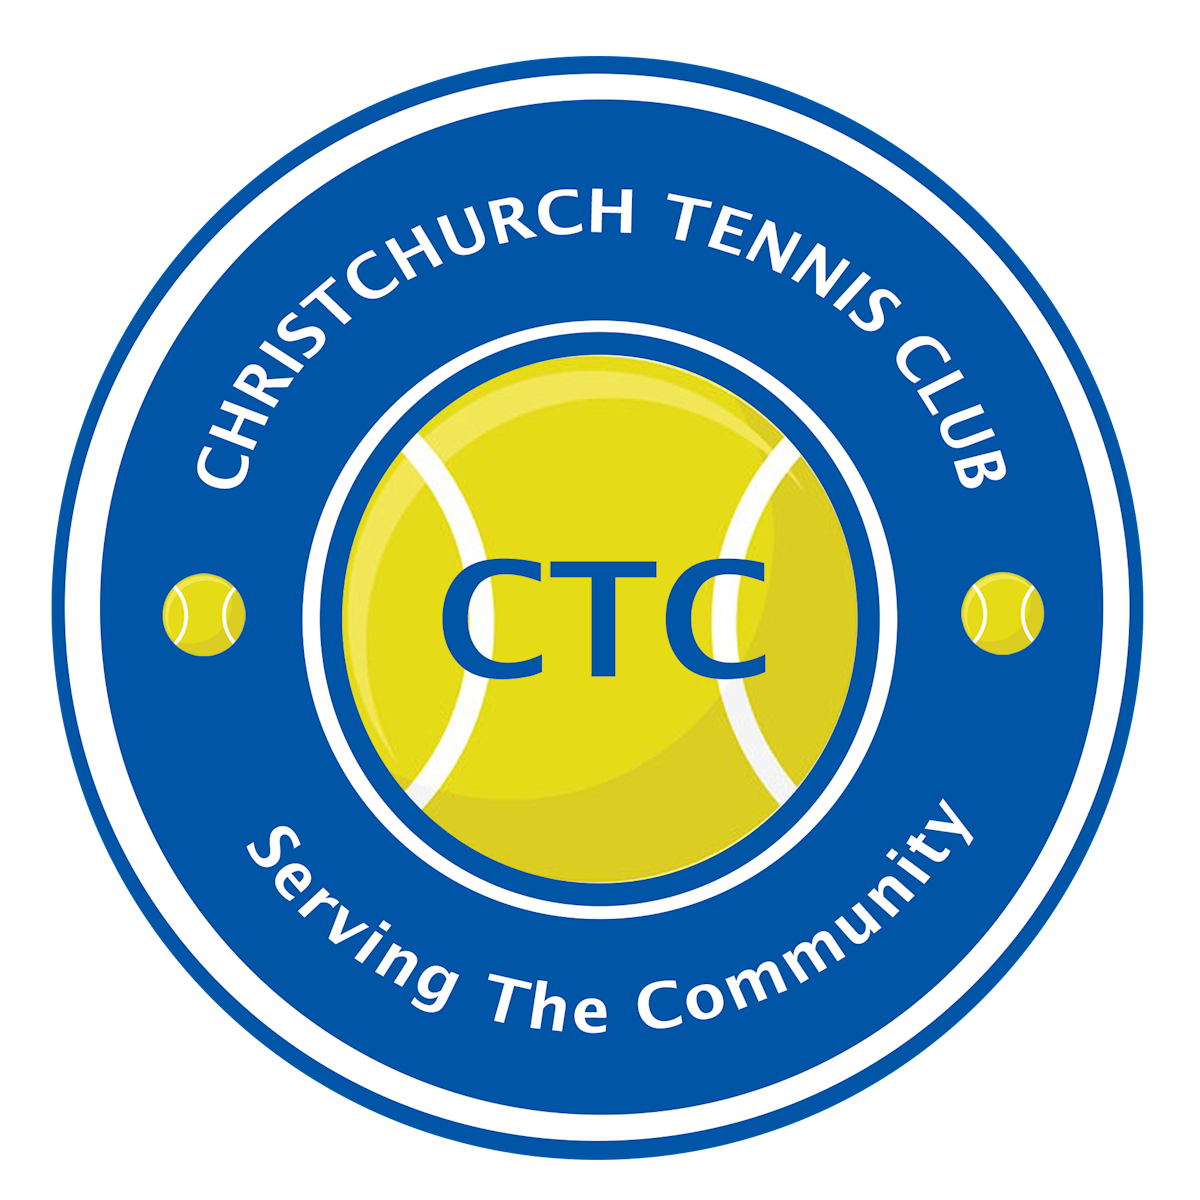 Christchurch Tennis Club